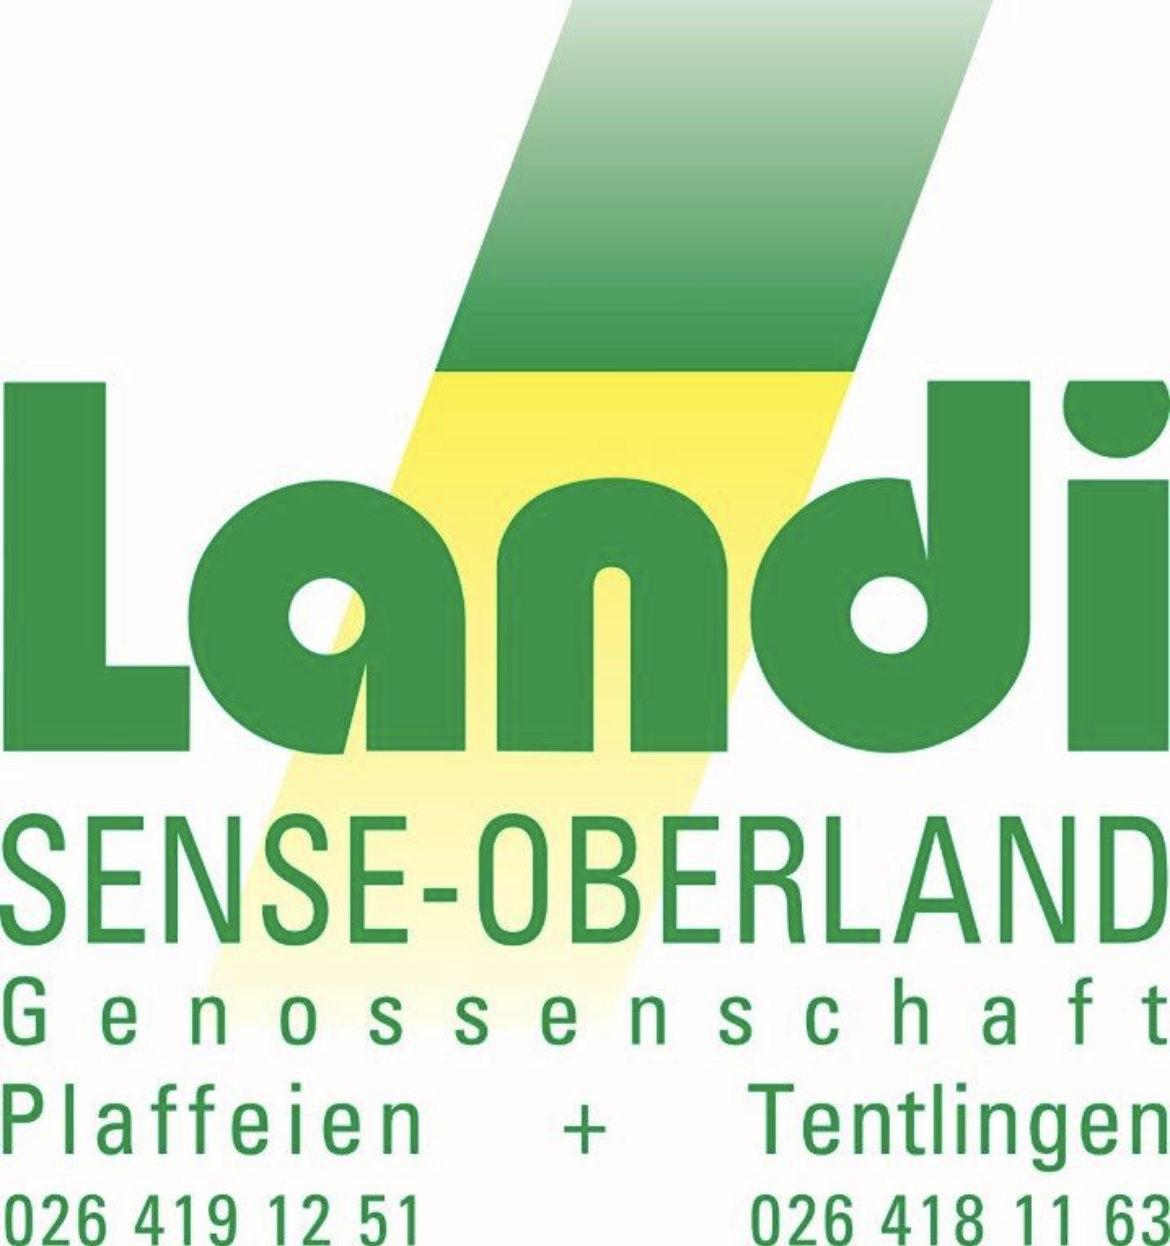 Landi Sense-Oberland